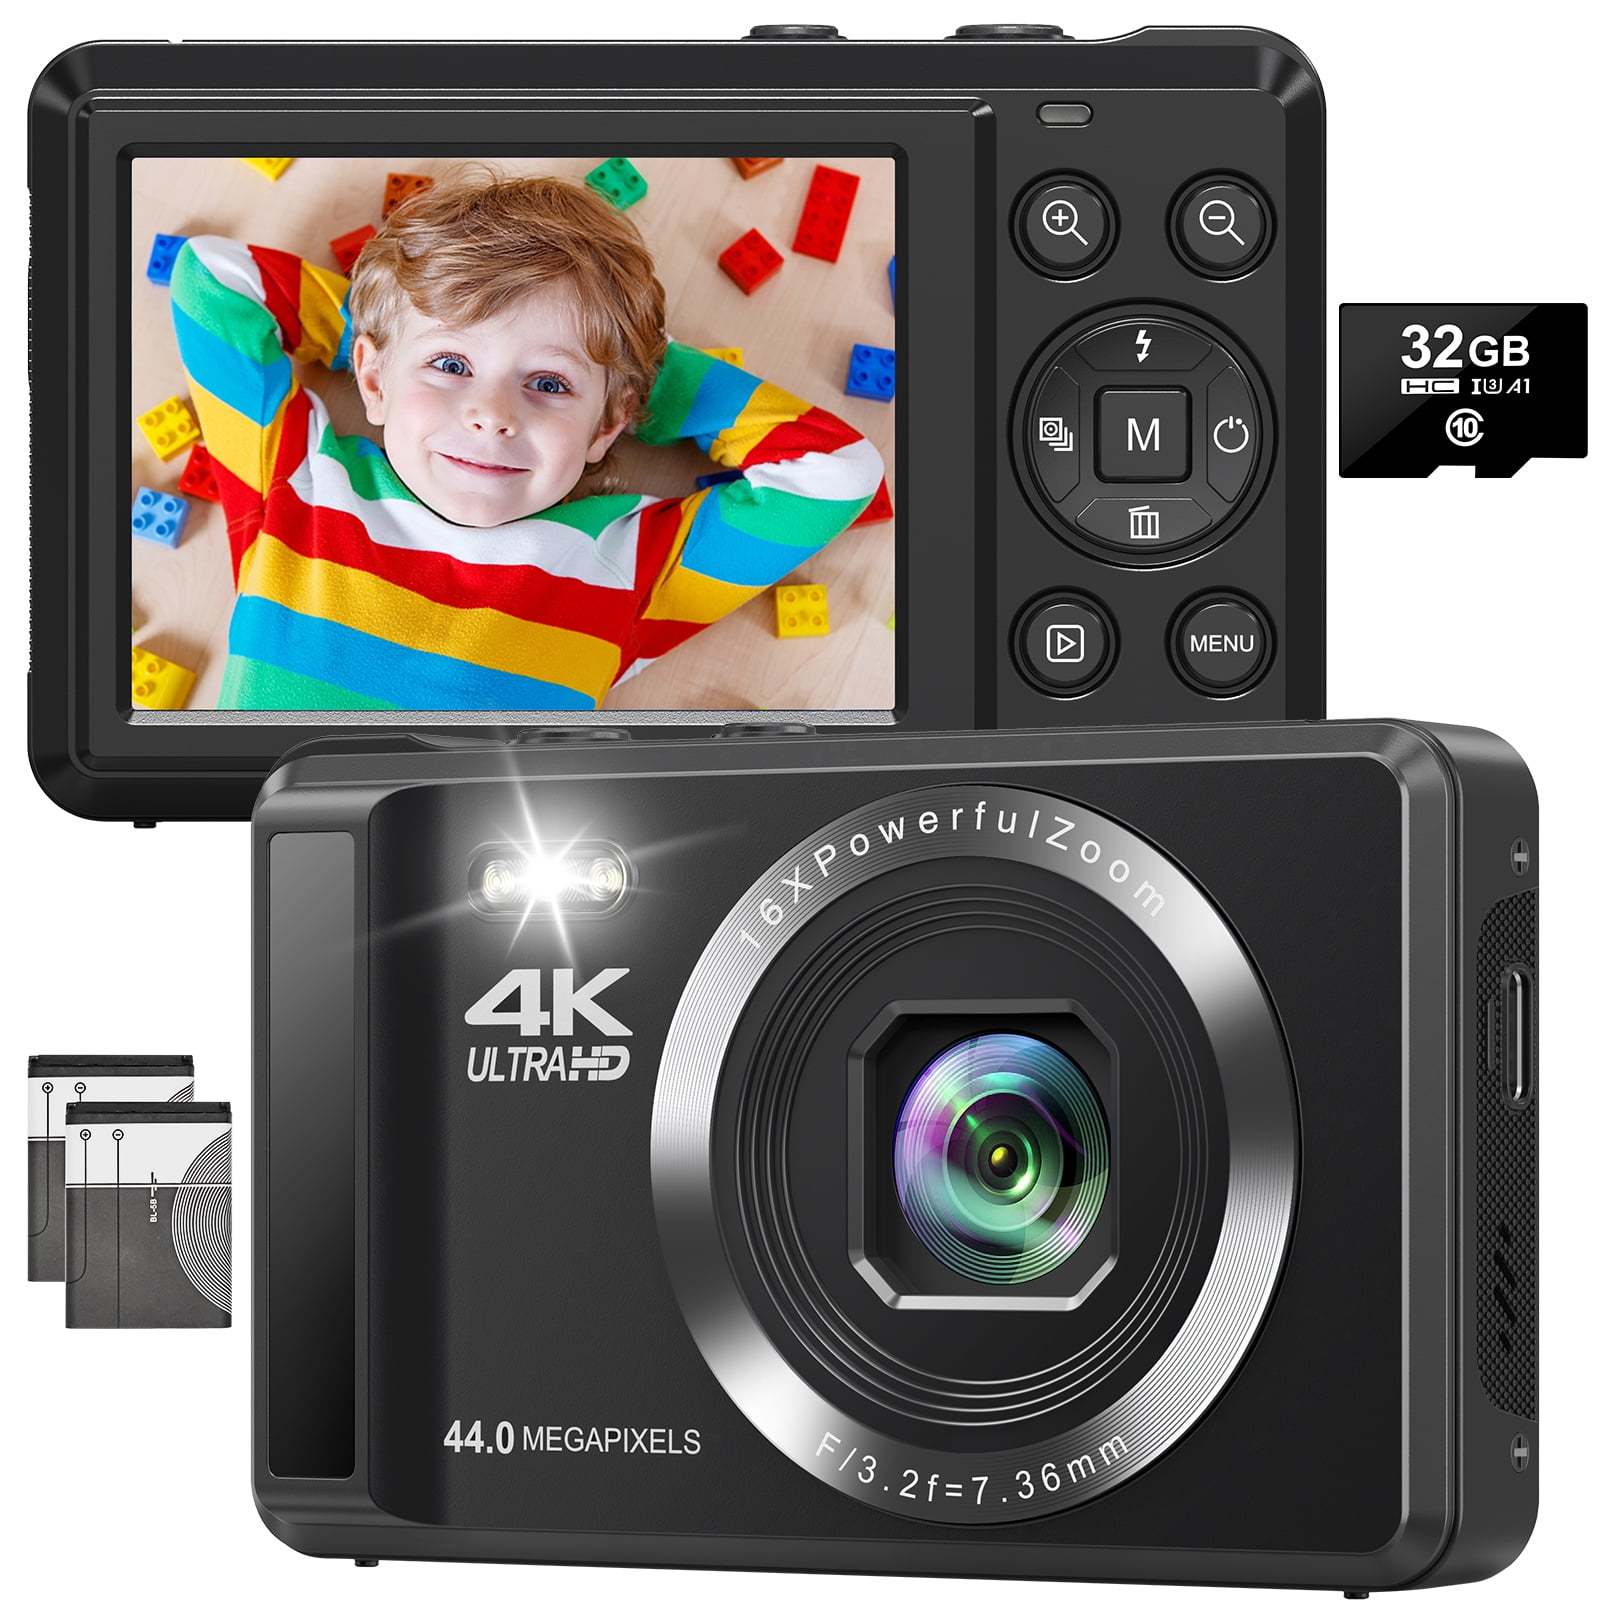 Cámara digital, cámara digital FHD 1080P para niños, cámara de video con  tarjeta SD de 32 GB, zoom digital 16X, cámara compacta de punto y disparo